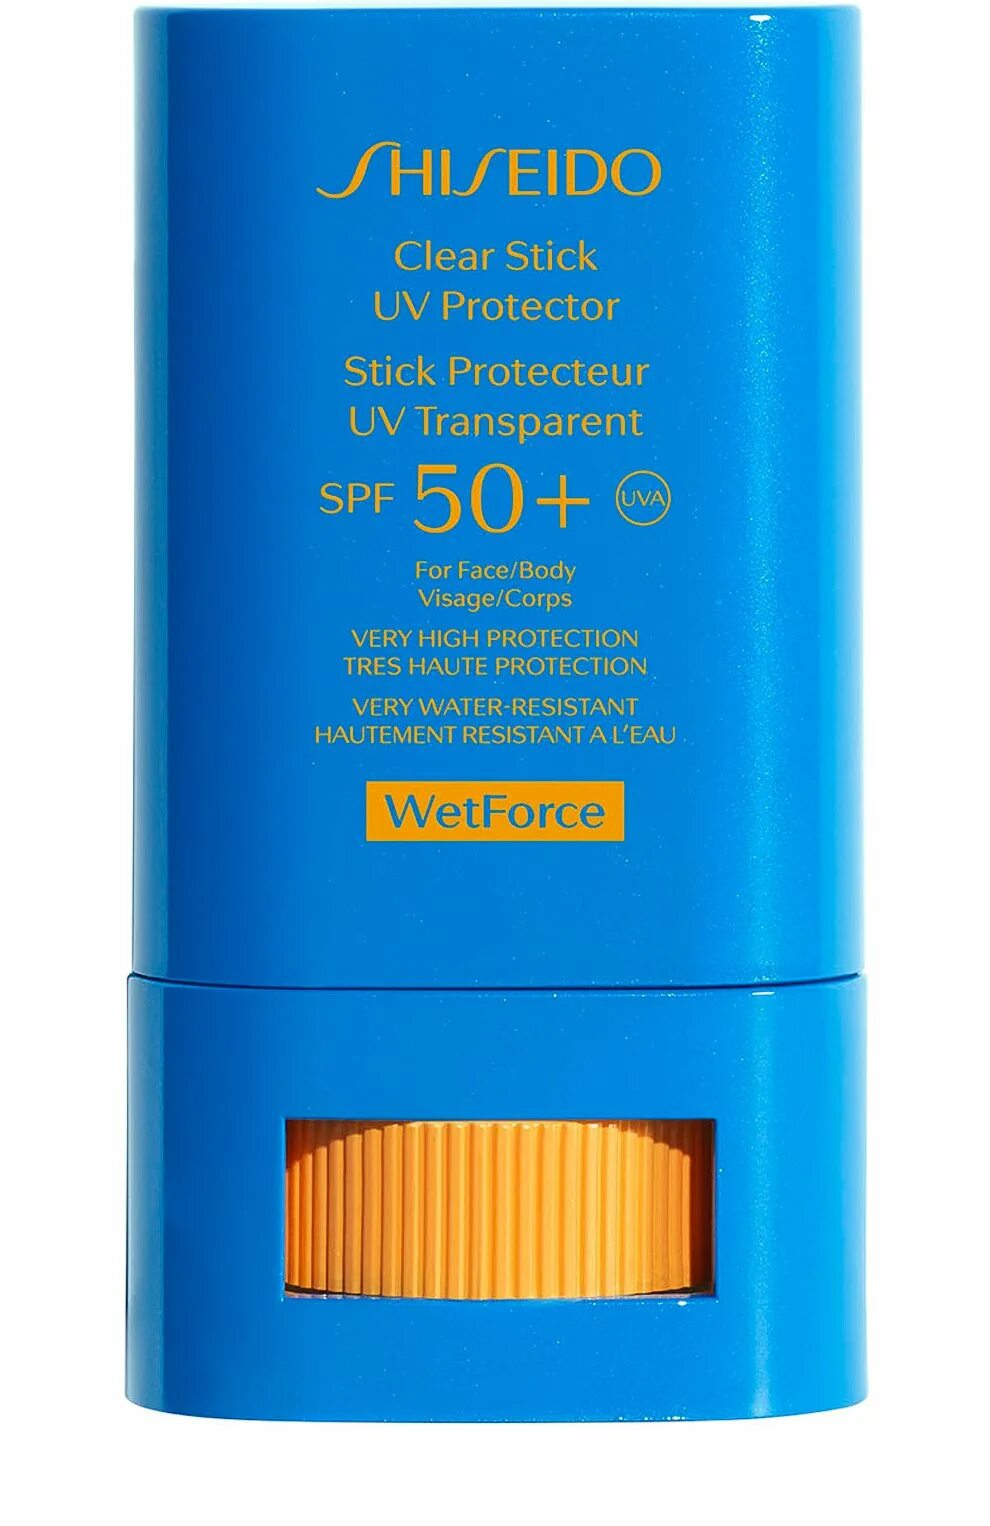 Солнцезащитный стик для лица spf. Shiseido SPF 50. Шисейдо стик СПФ 50. Shiseido солнцезащитный крем SPF 50. Стик для лица солнцезащитный SPF 50+.